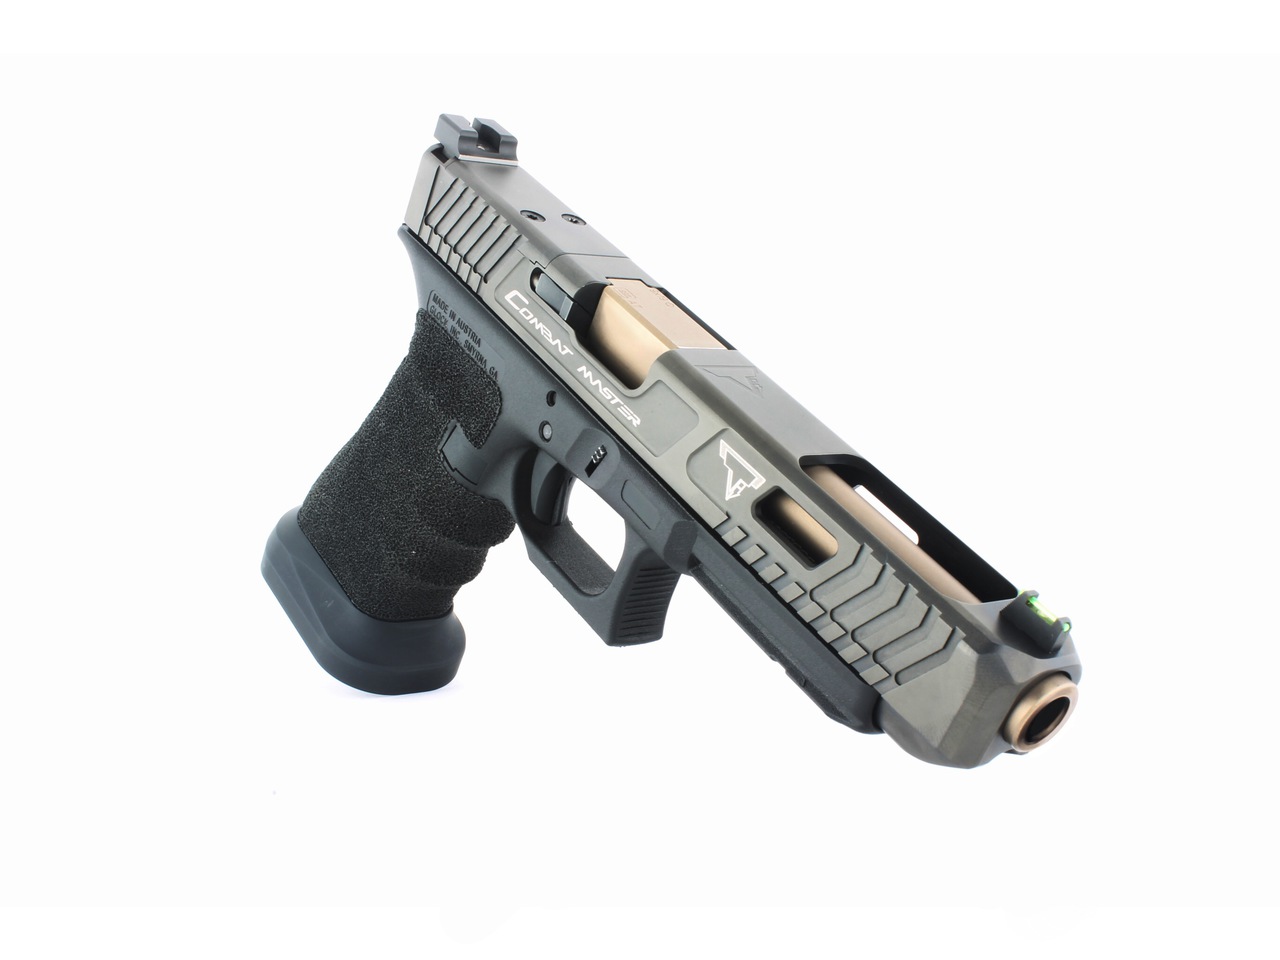 Rozšířená šachta zásobníku Taran Tactical Competition pro Glock 17/34 Gen4